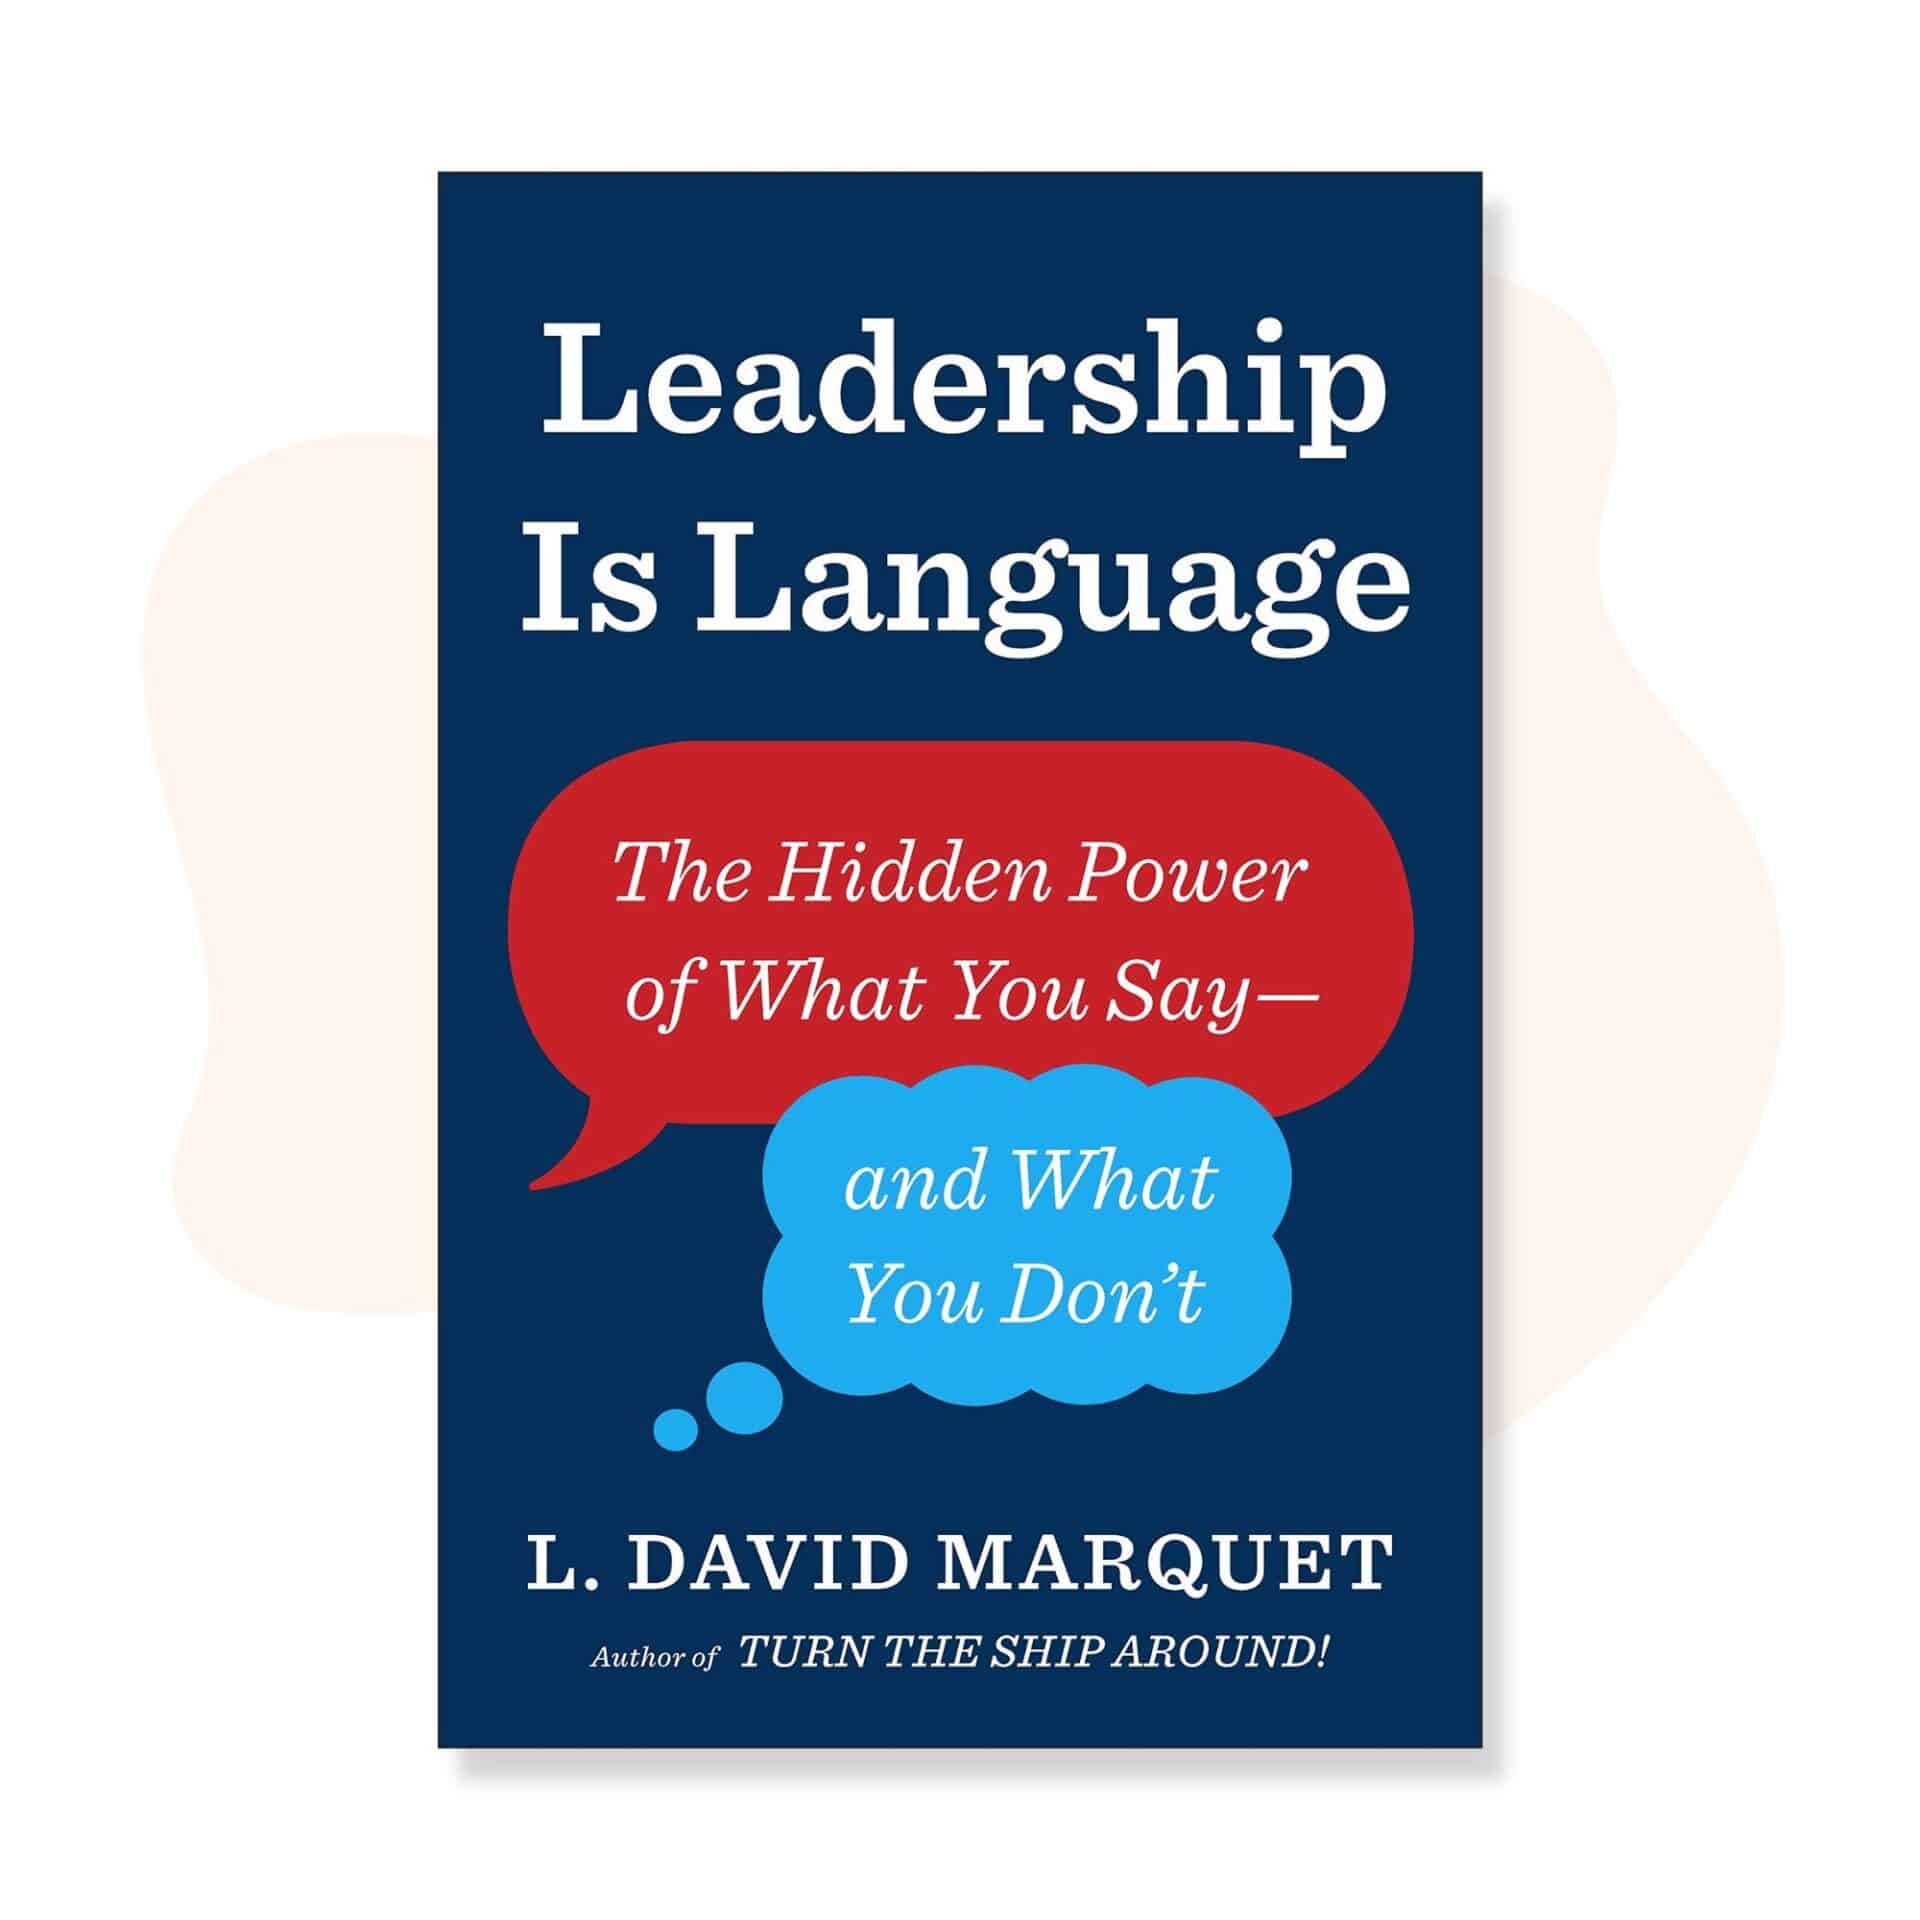 Leadership is language